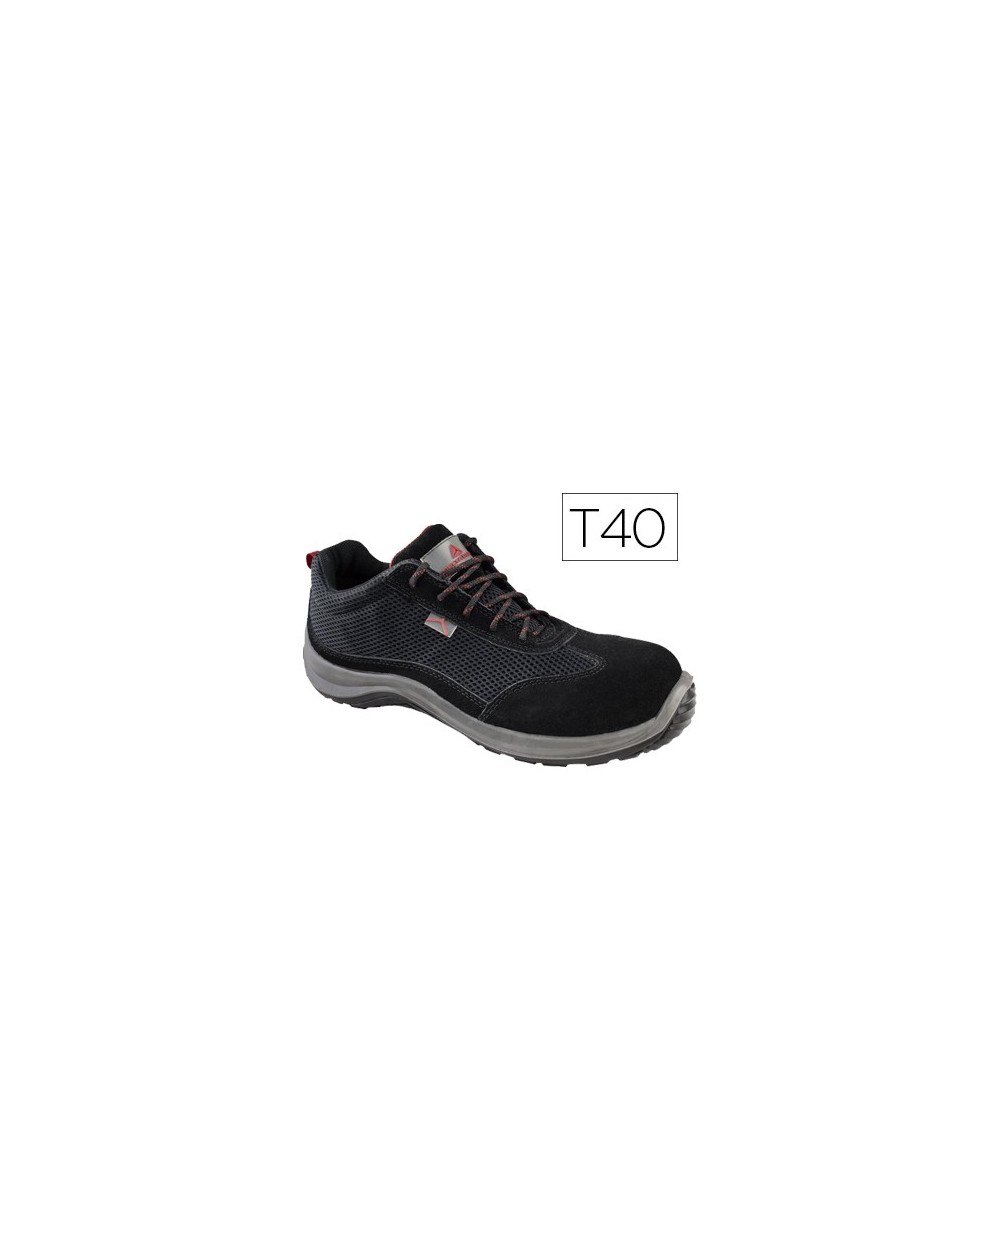 Zapatos de seguridad deltaplus asti piel de serraje afelpado suela de composite negro talla 40